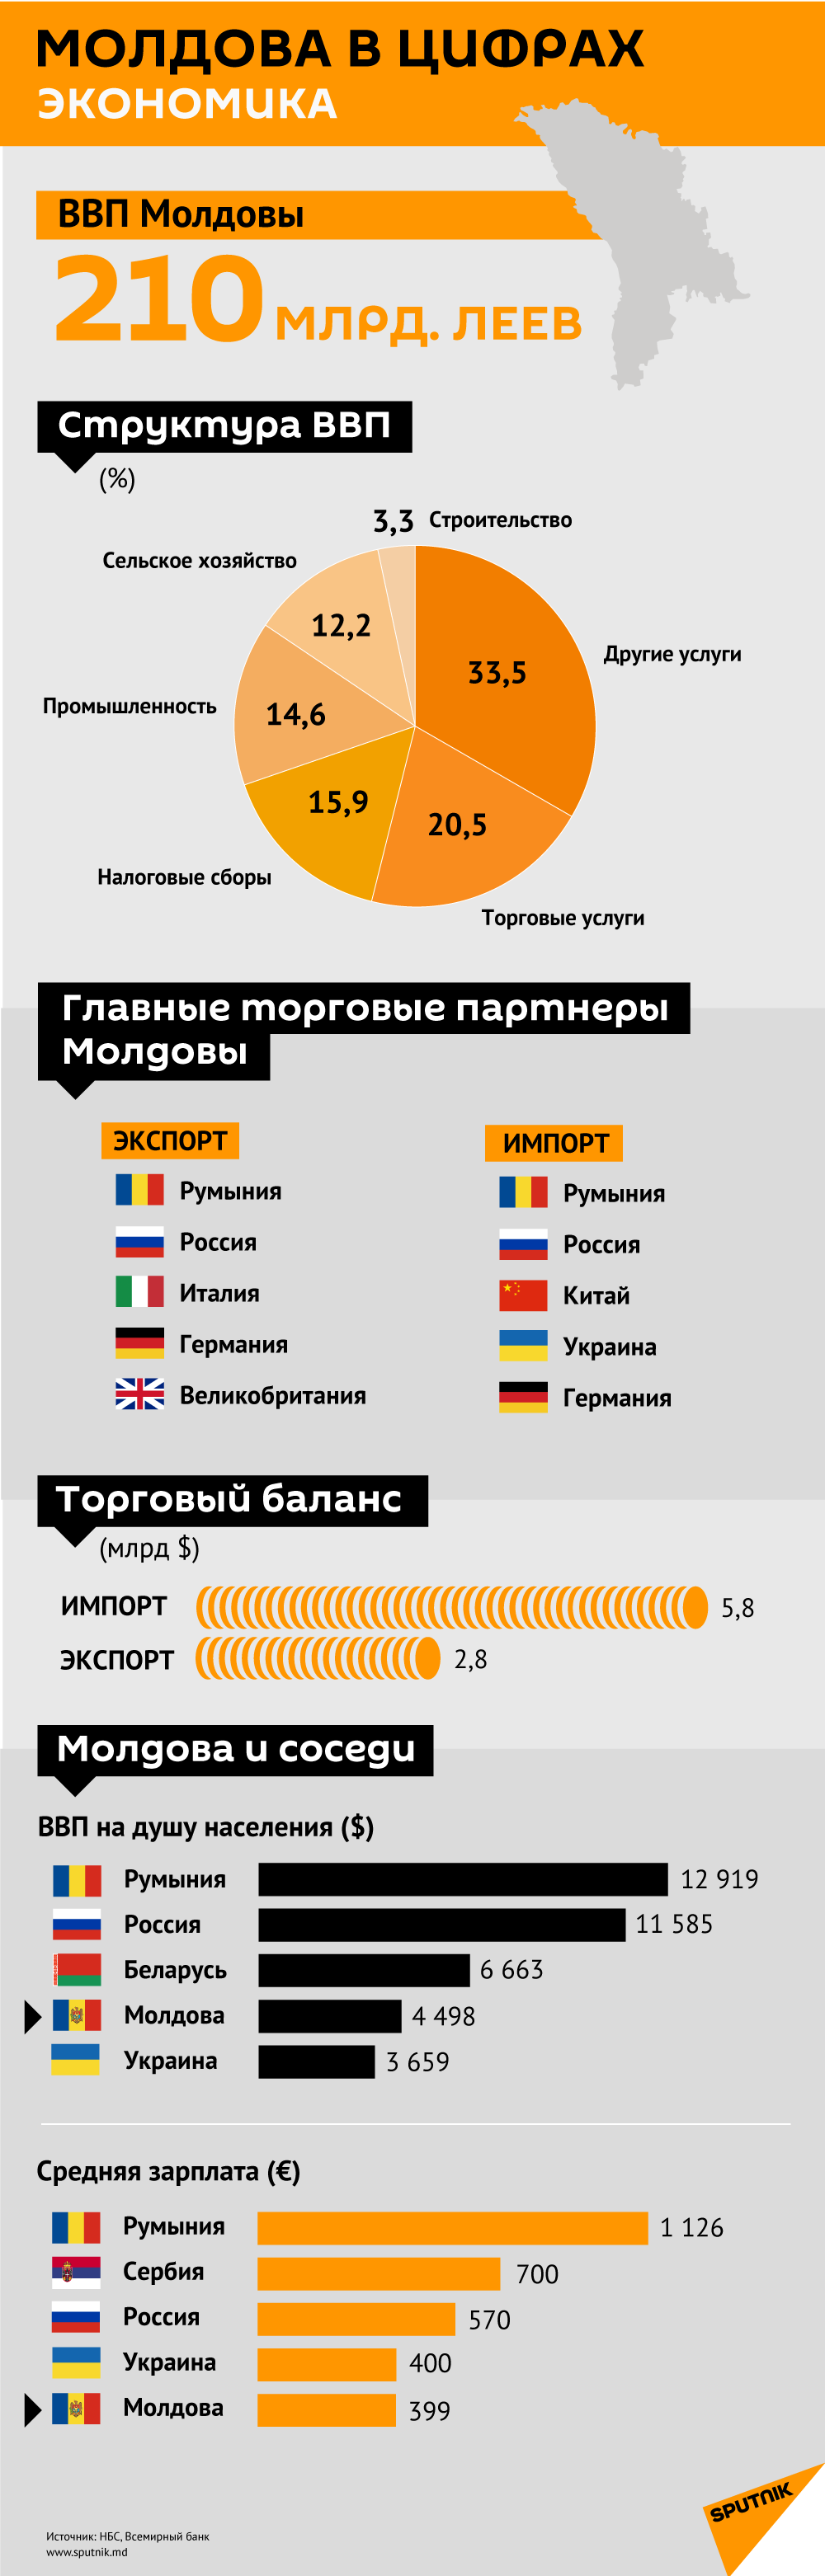 Молдова в цифрах. Экономика - Sputnik Молдова